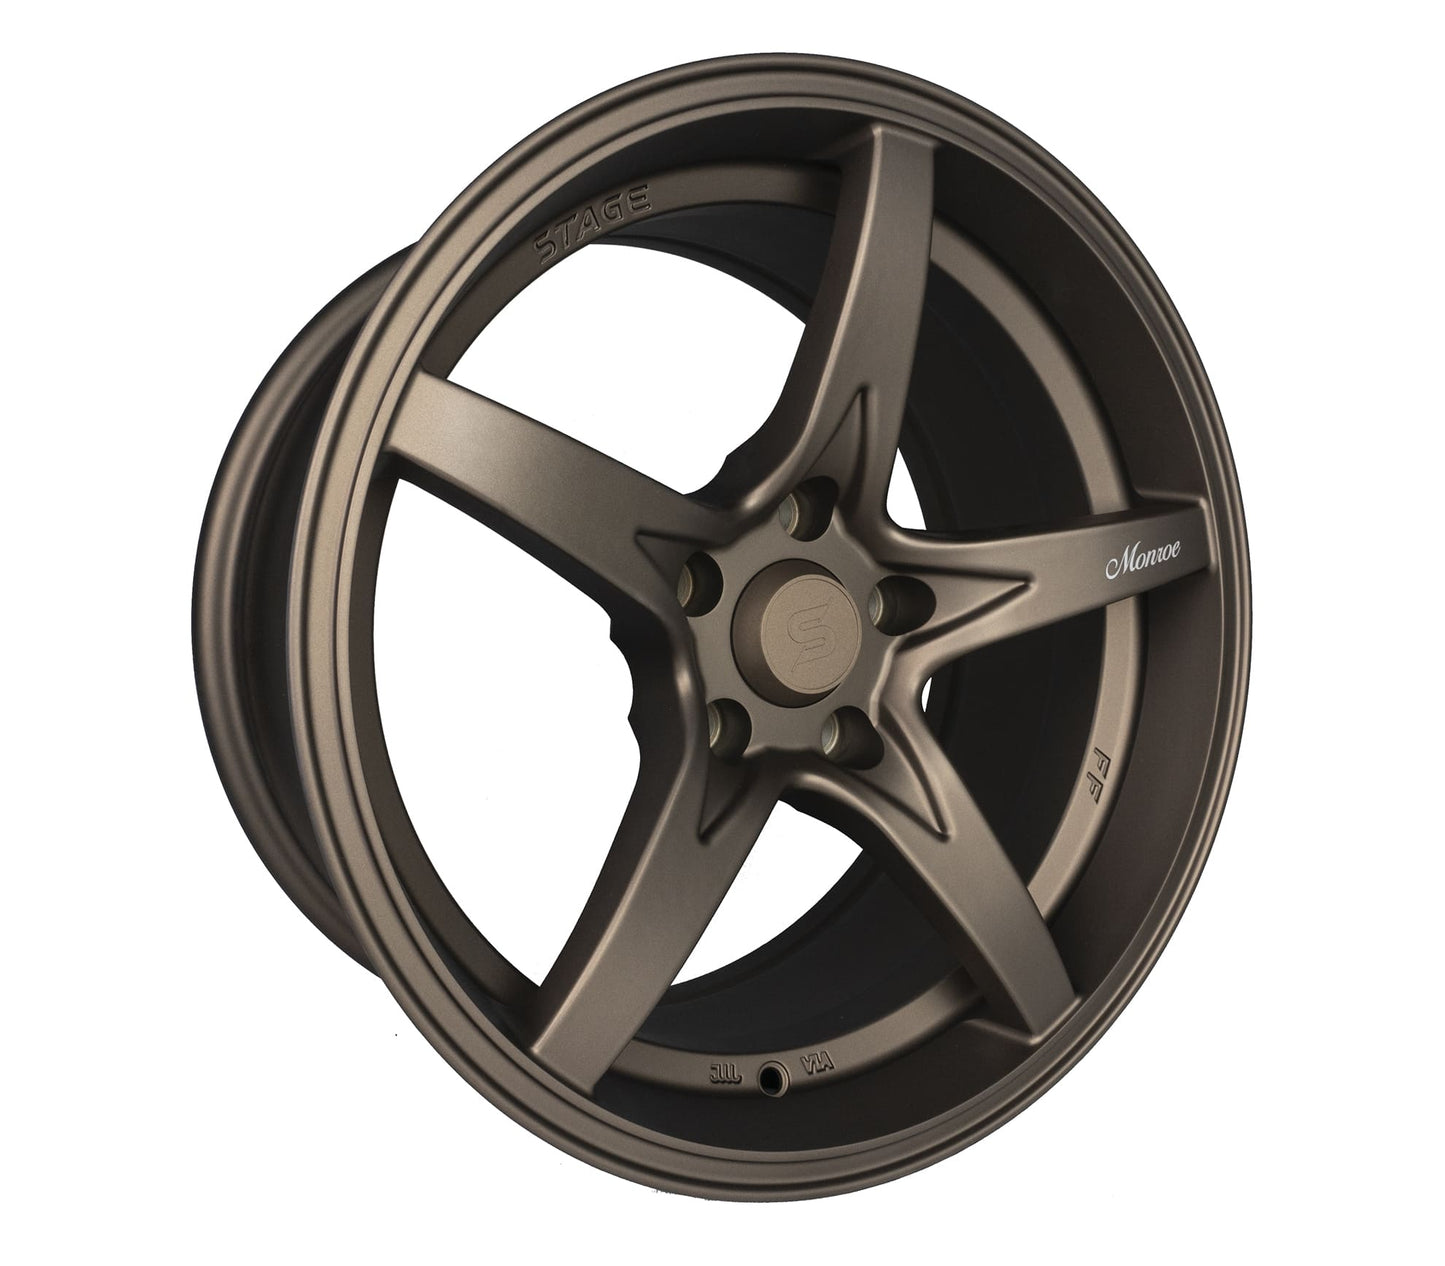 Stage Wheels Monroe 17x8.5 +30mm 5x114.3 CB: 73.1 Color: Matte Bronze